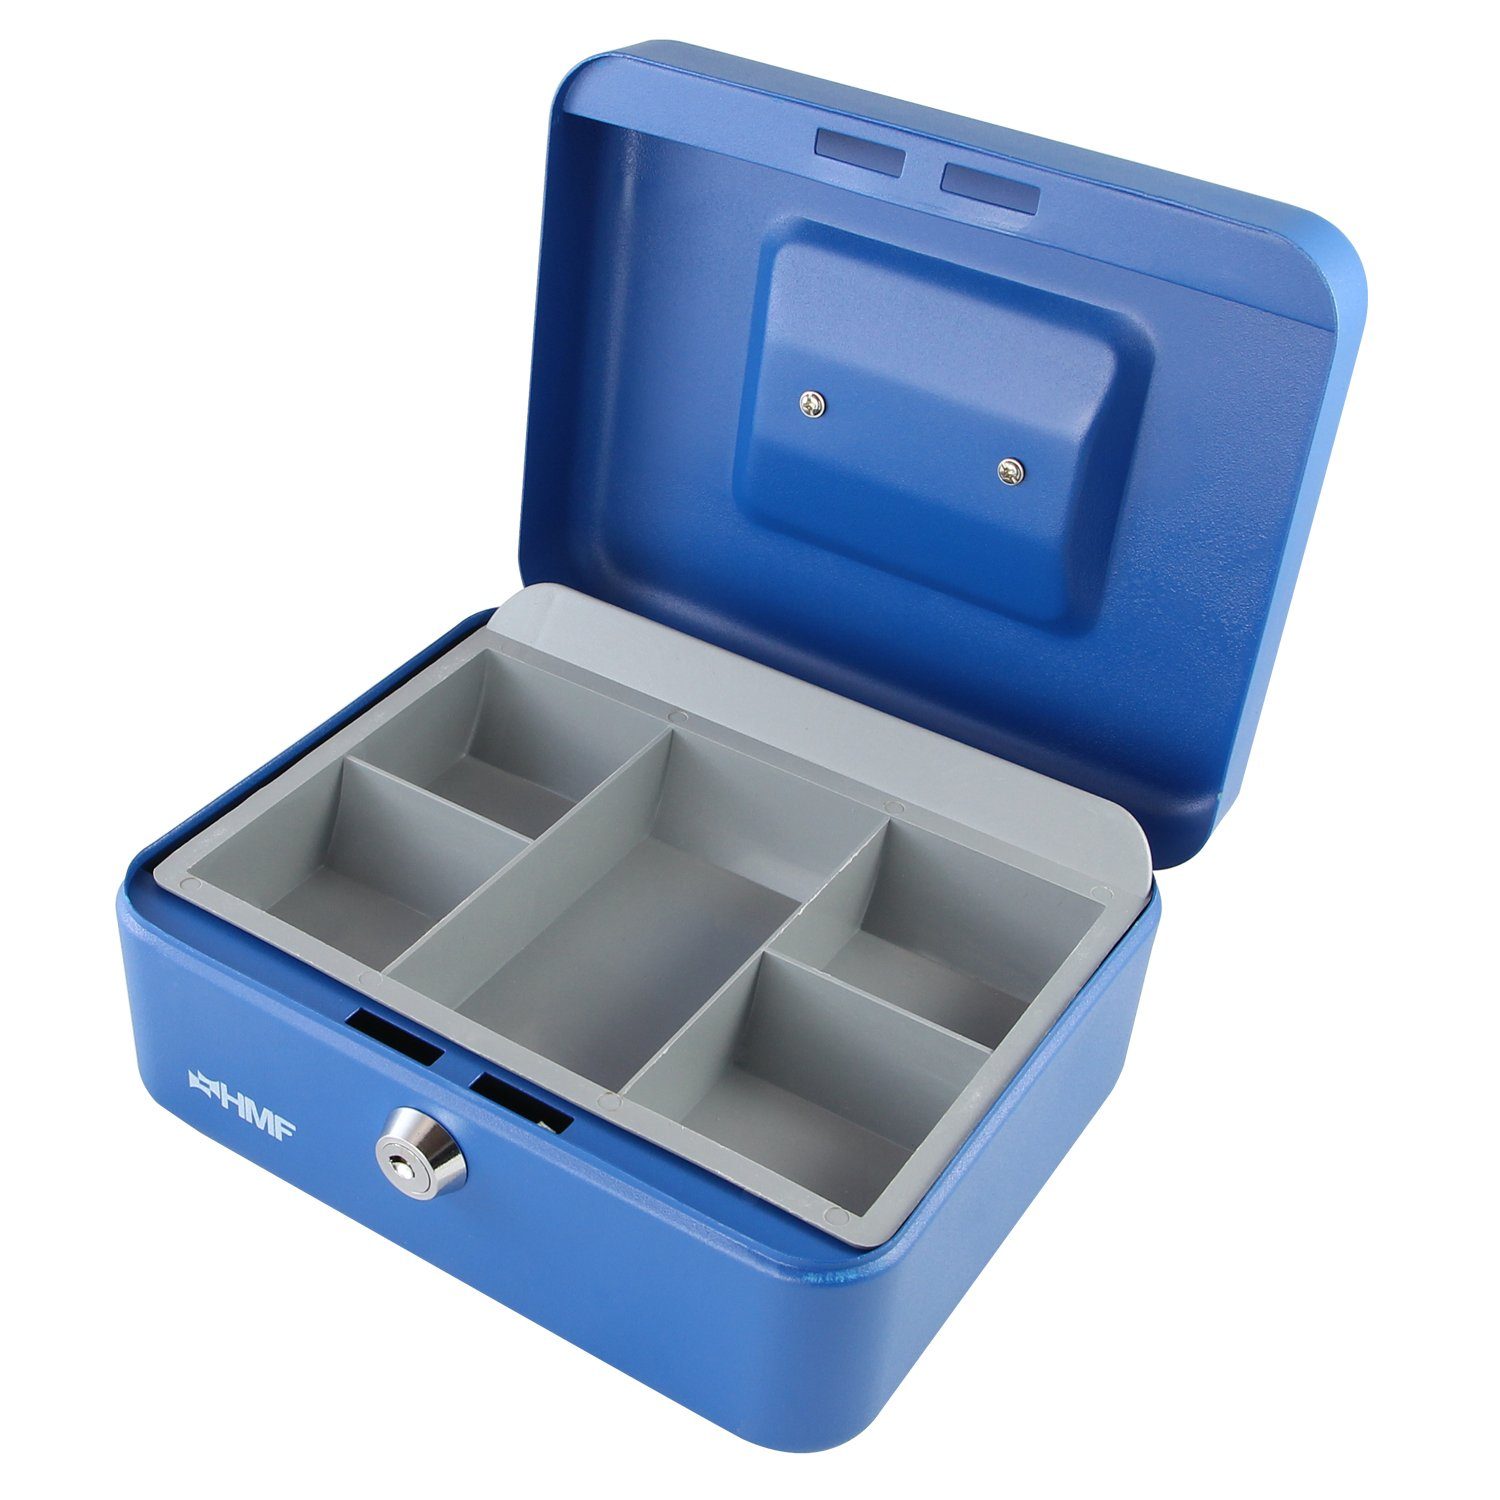 HMF Geldkassette Abschließbare Bargeldkasse mit Münzeinsatz, robuste Geldbox mit Schlüssel, 20x16x9,5 cm blau